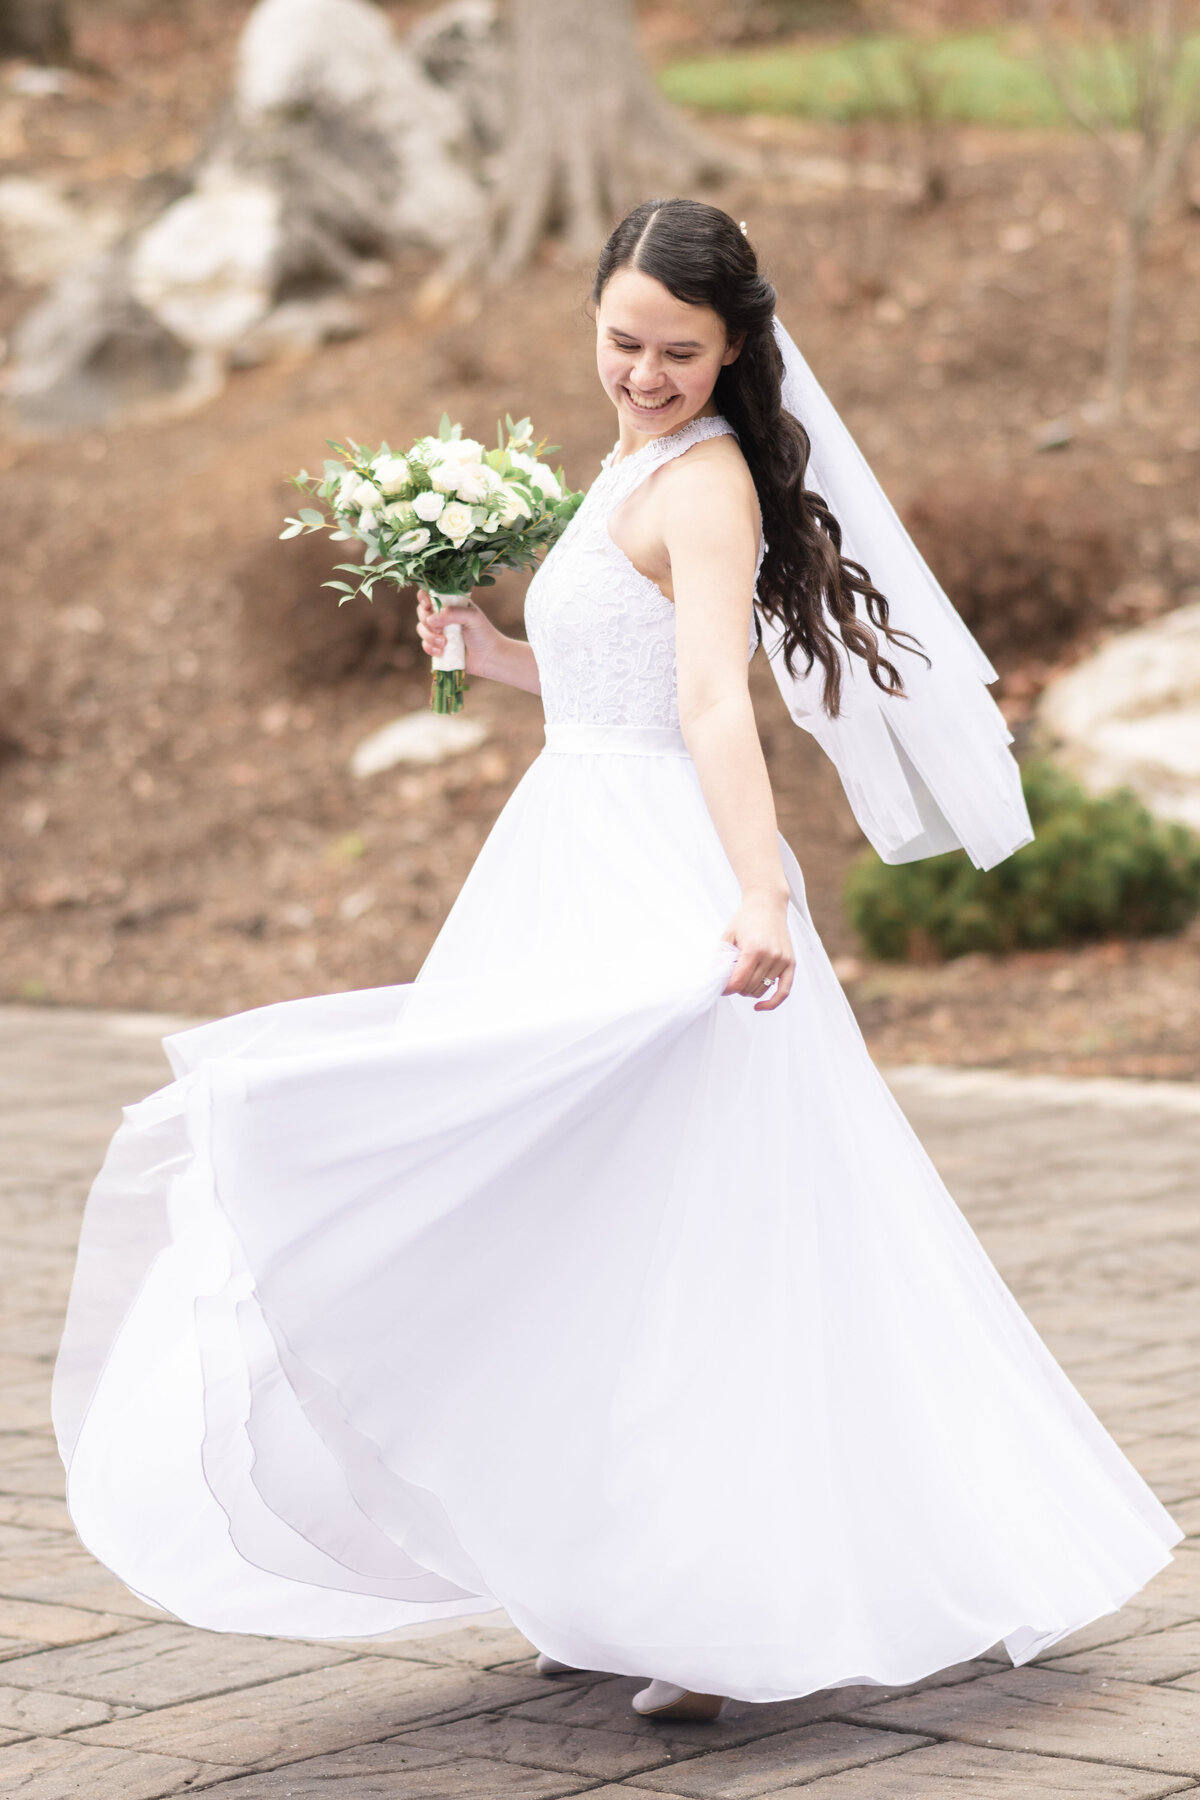 Bride twirling in her dress